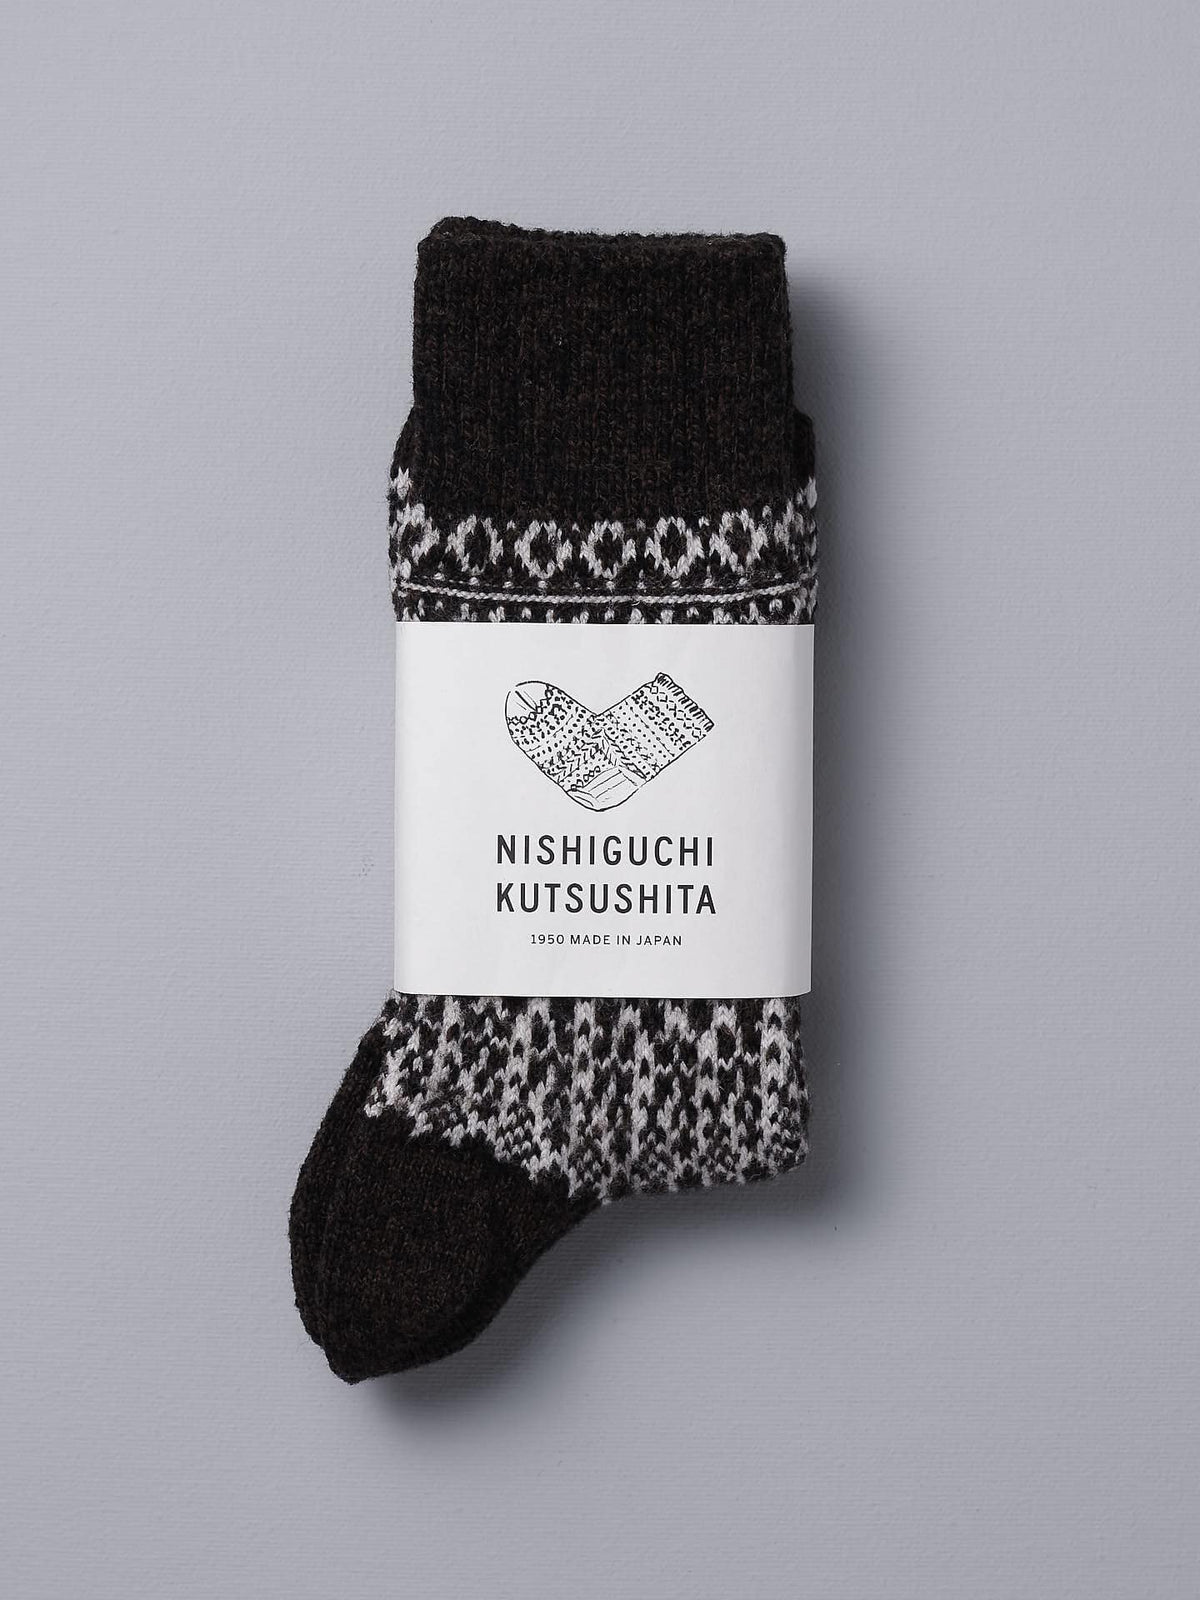 A Nishiguchi Kutsushita Oslo Wool Jacquard Socks – Coffee with a black and white pattern.